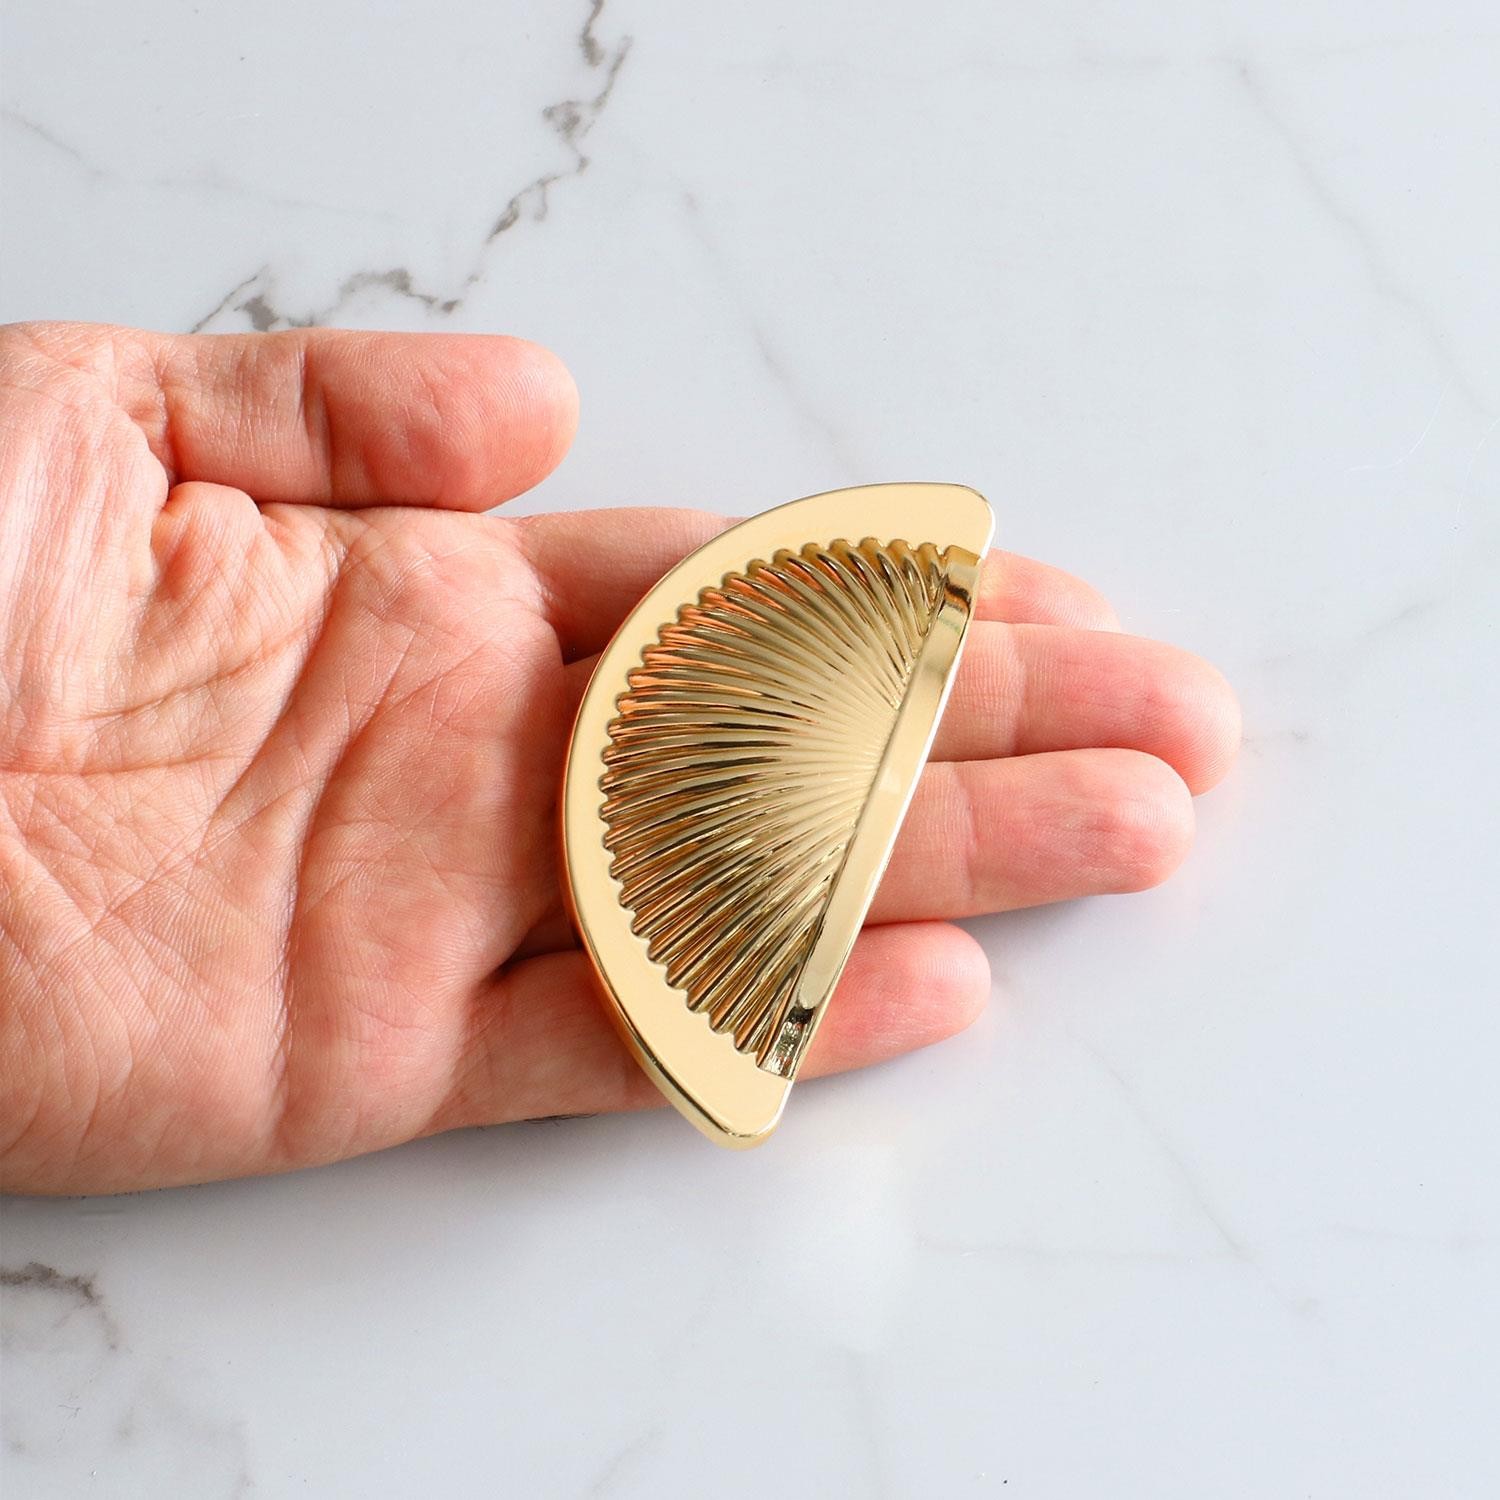 Yelken Midye Çanak 64 mm Düğme Altın Gold Mobilya Mutfak Dolabı Çekmece Dolap Kulpları Kulpu Kulb